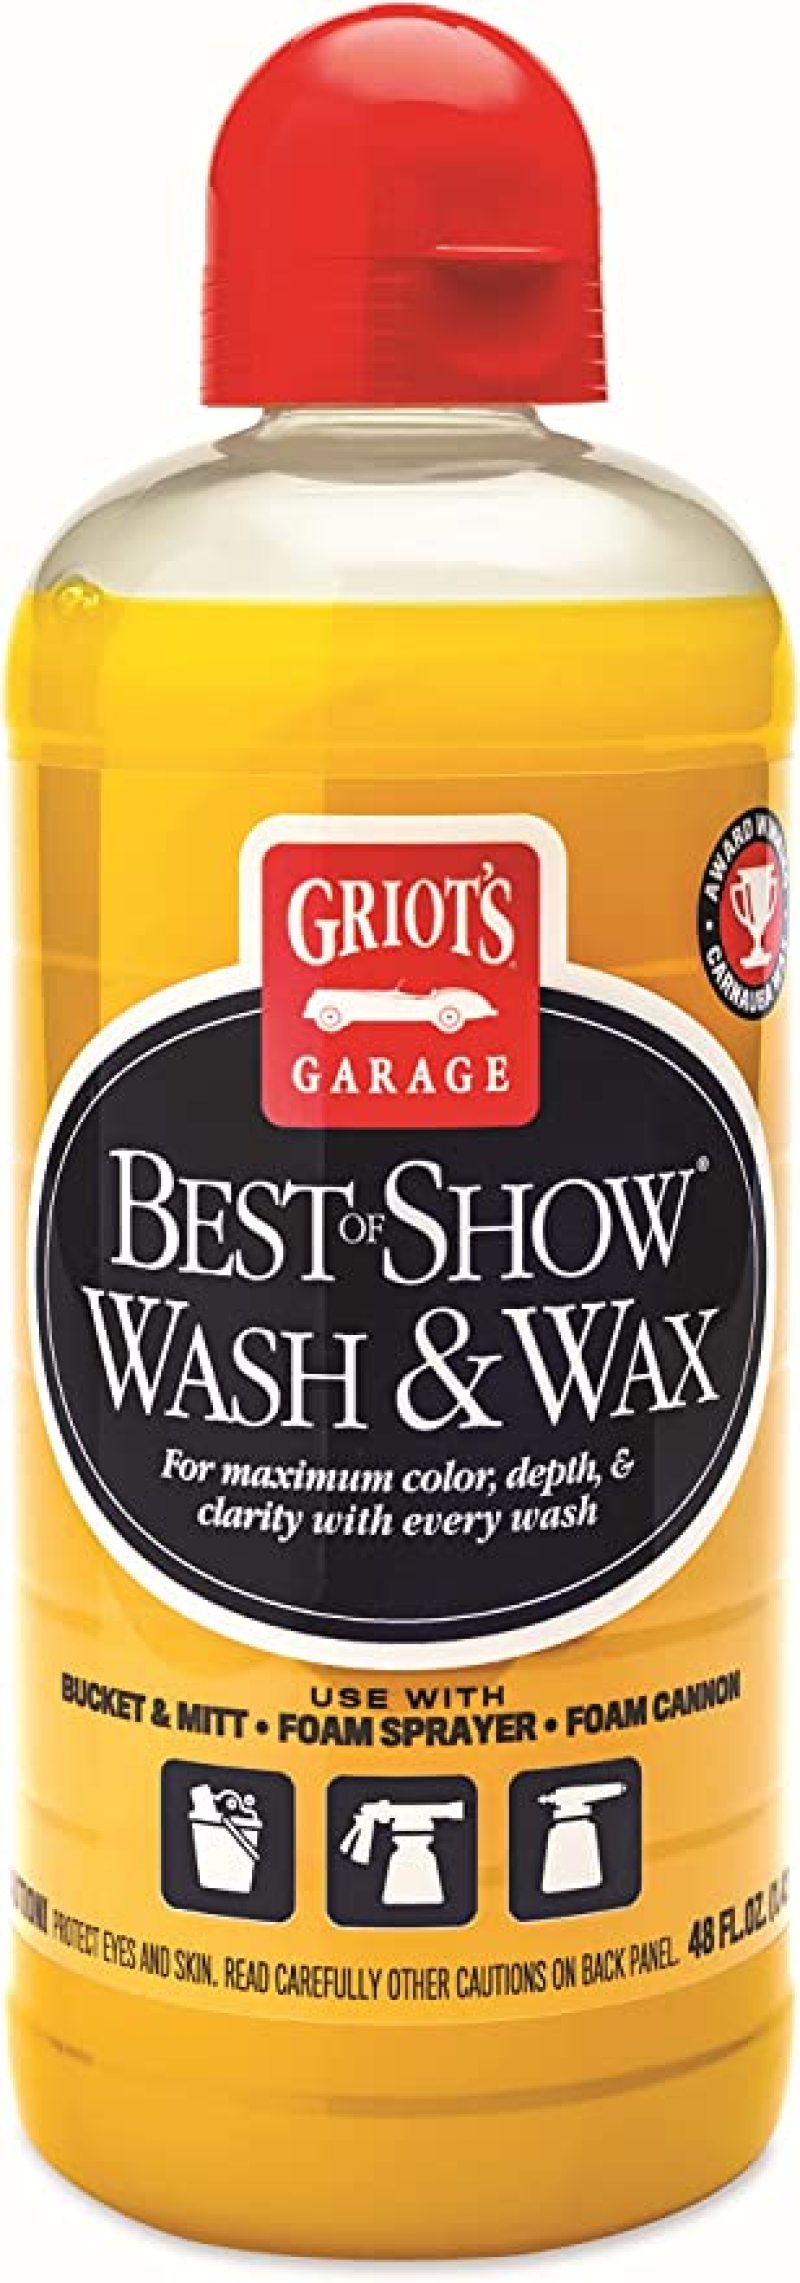 Griots Garage Best of Show Spray Wax - 48oz - 10887